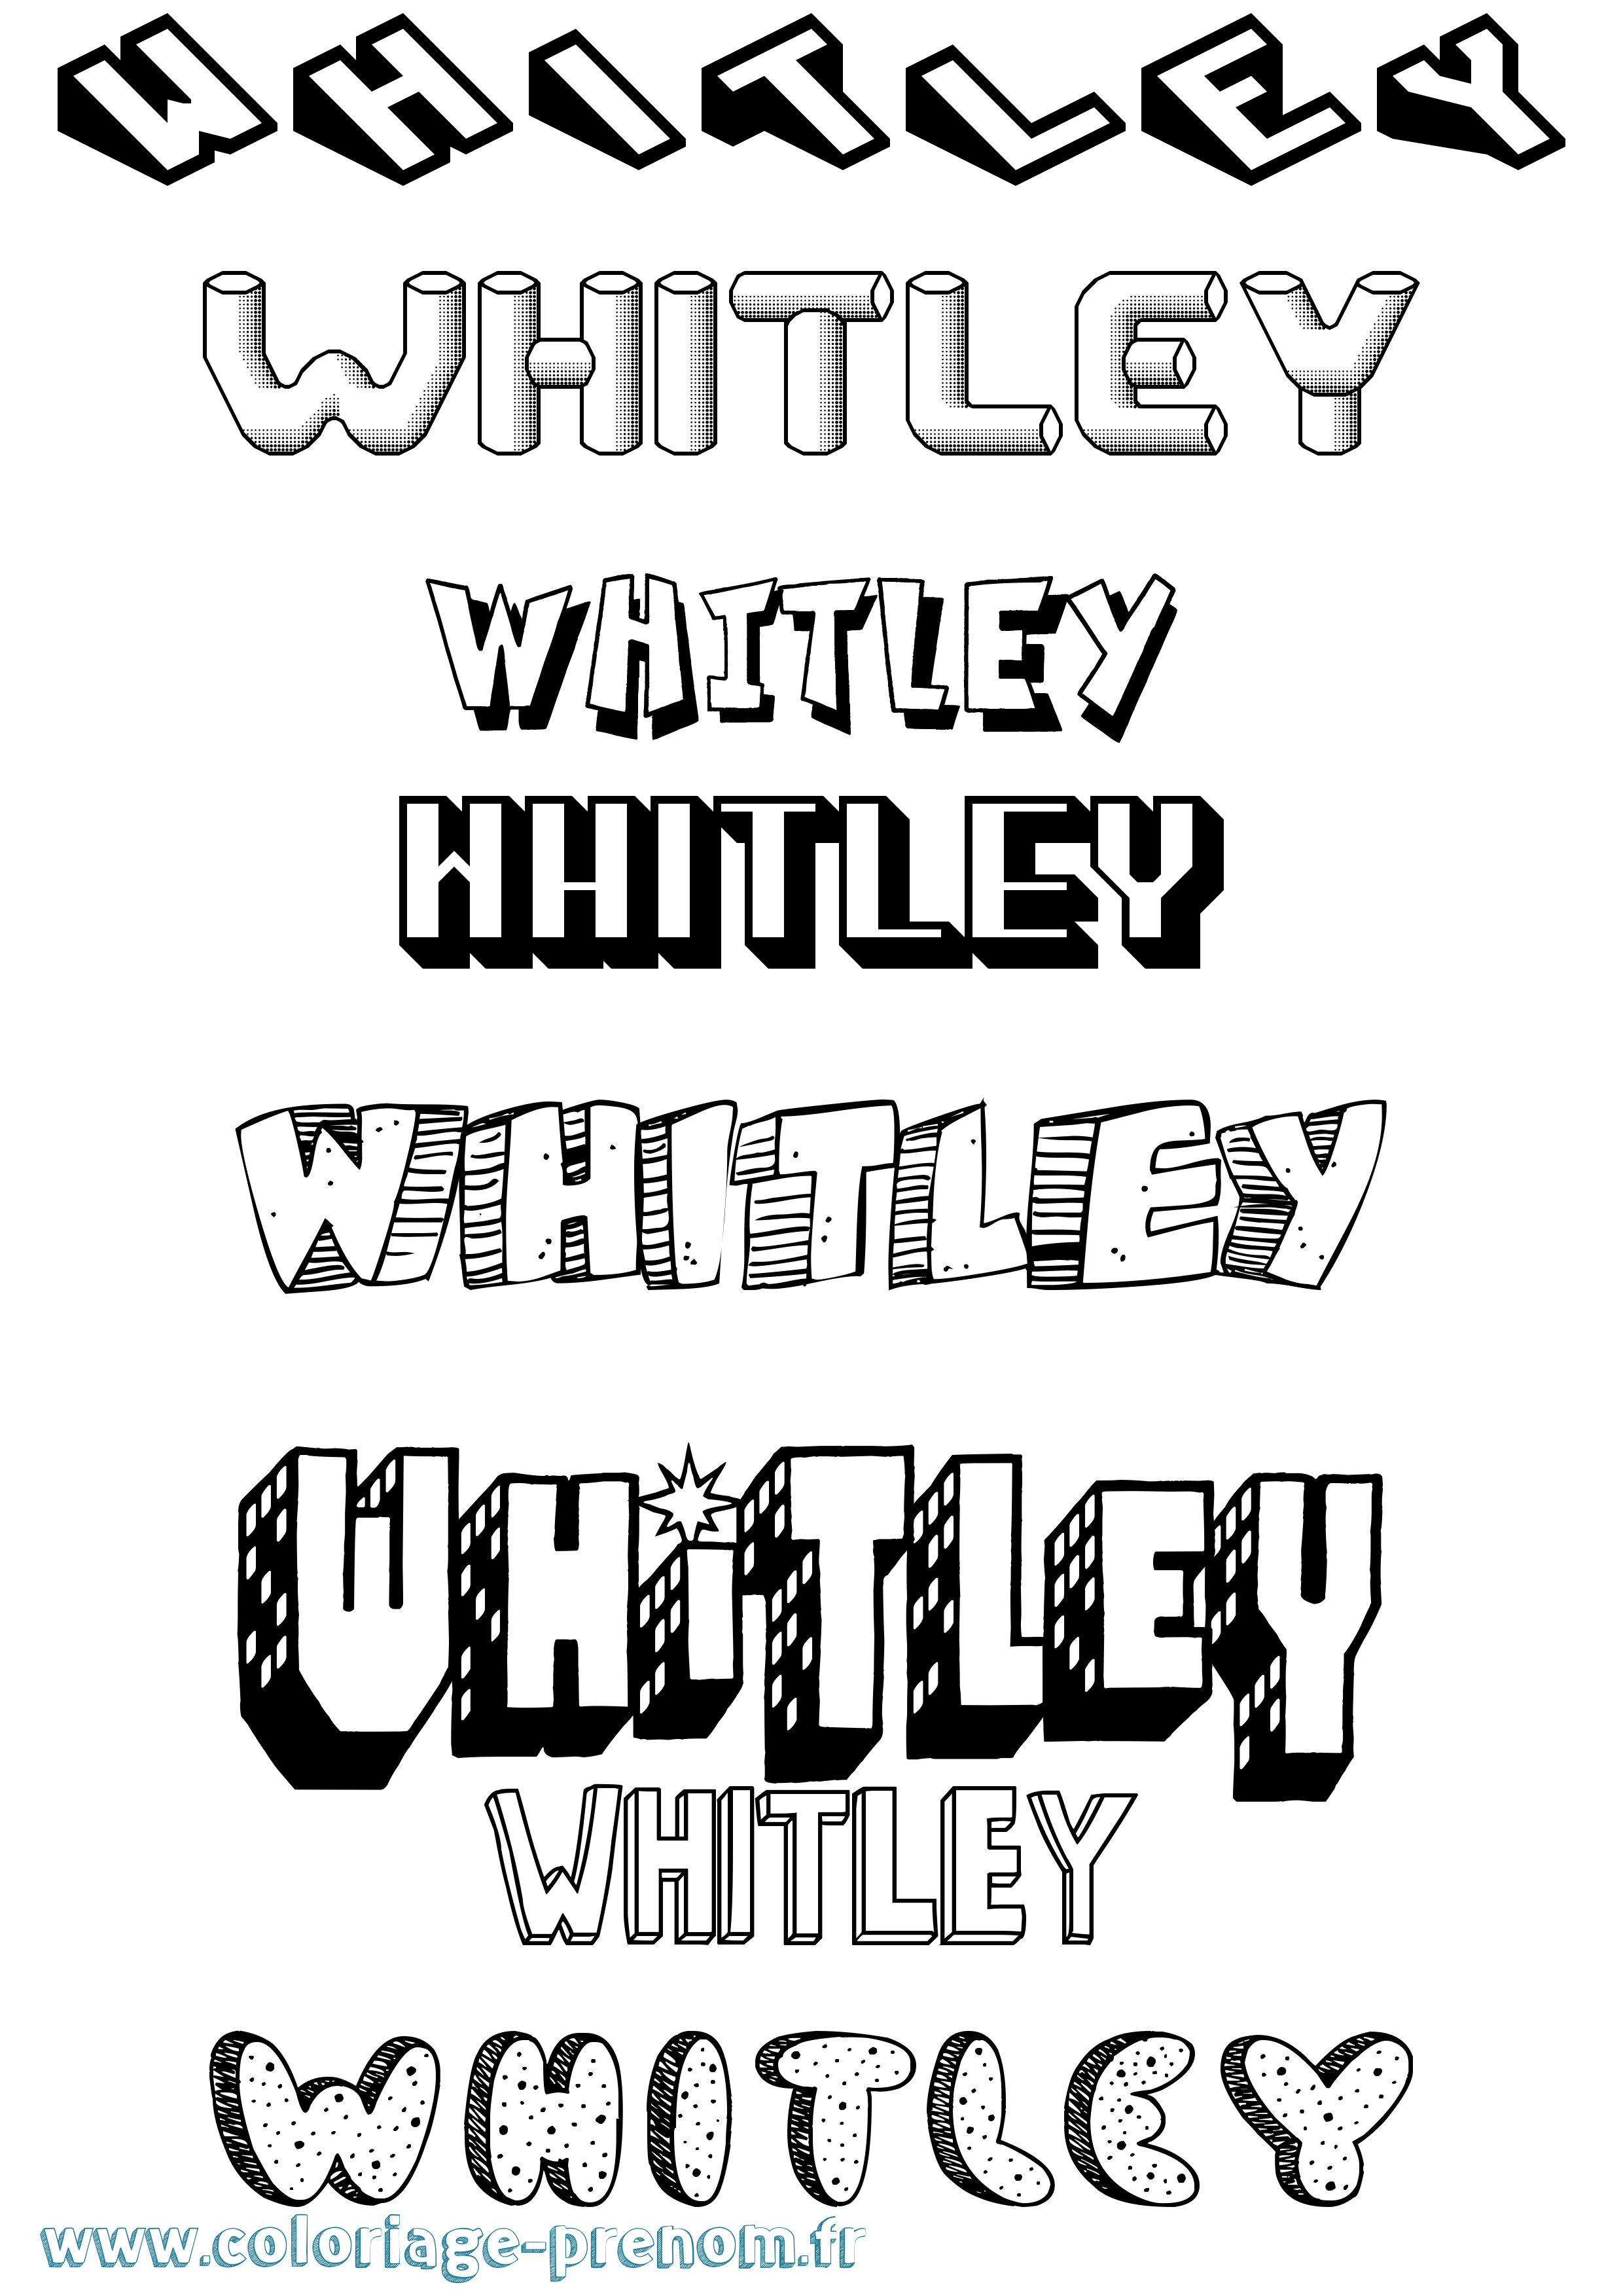 Coloriage prénom Whitley Effet 3D